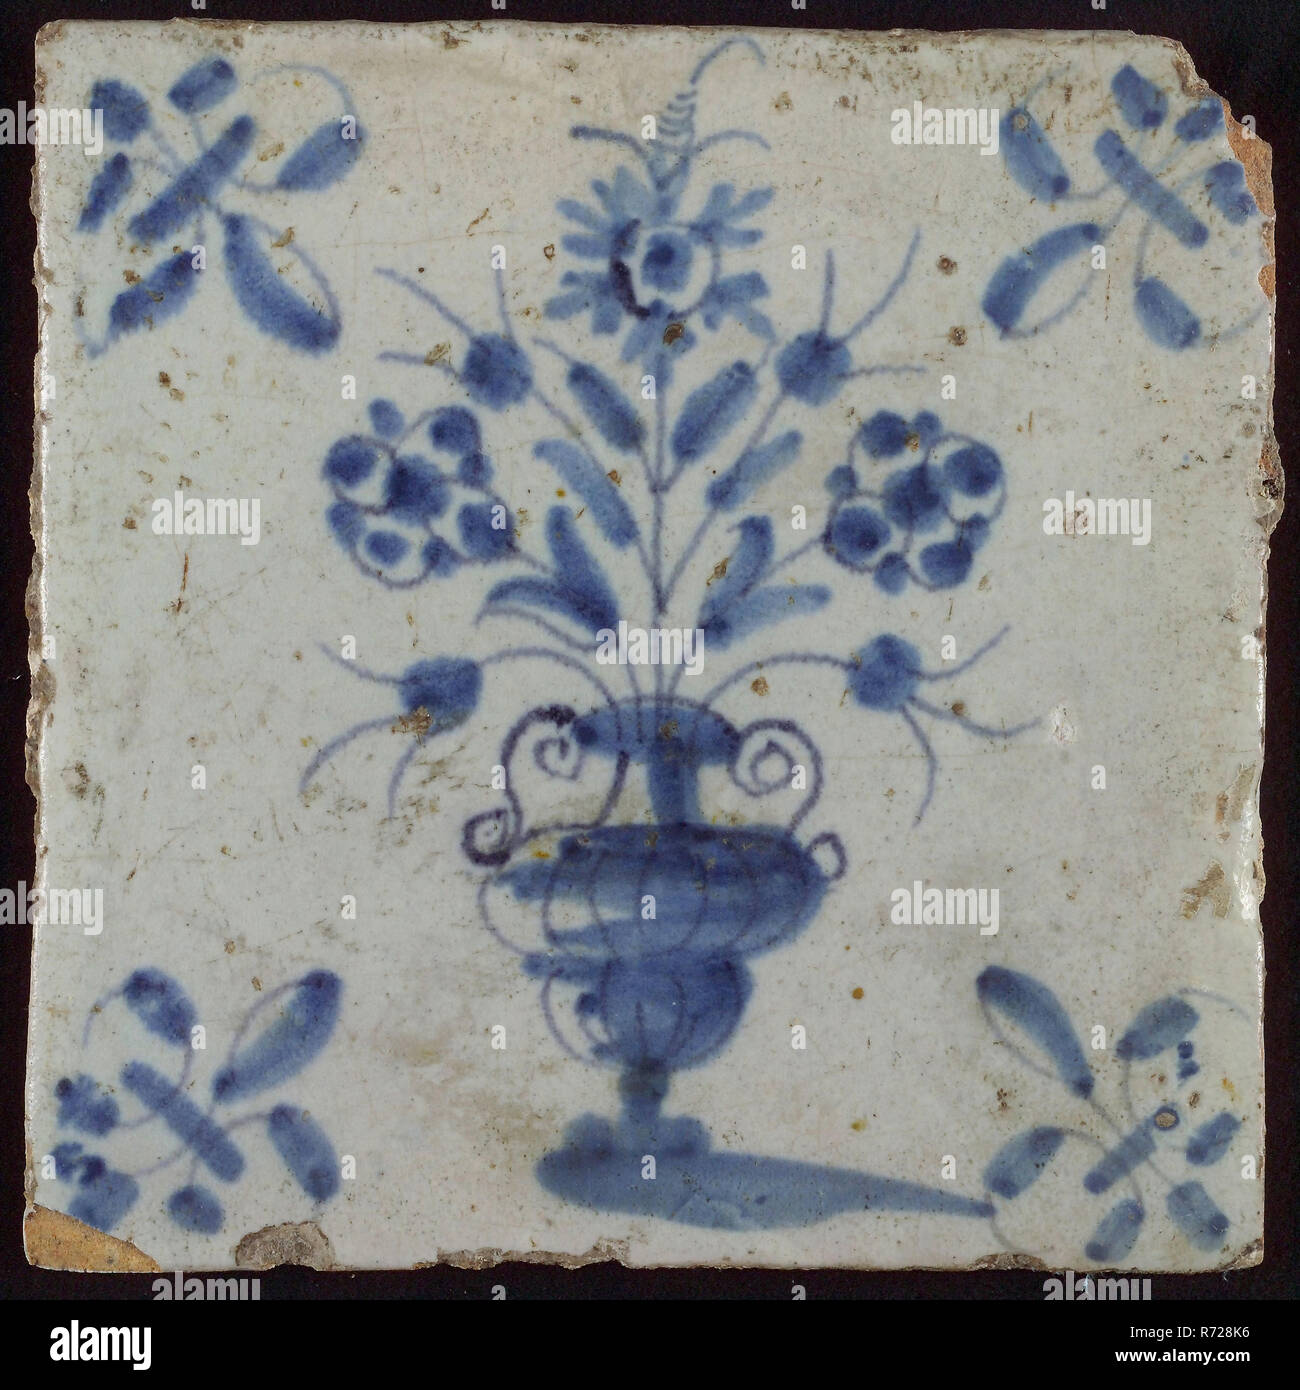 Mosaico, maceta en azul sobre blanco, esquina motif lily, azulejo de pared escultura mosaico de cerámica glaseada de barro cocido pintado vidriado 2x Foto de stock